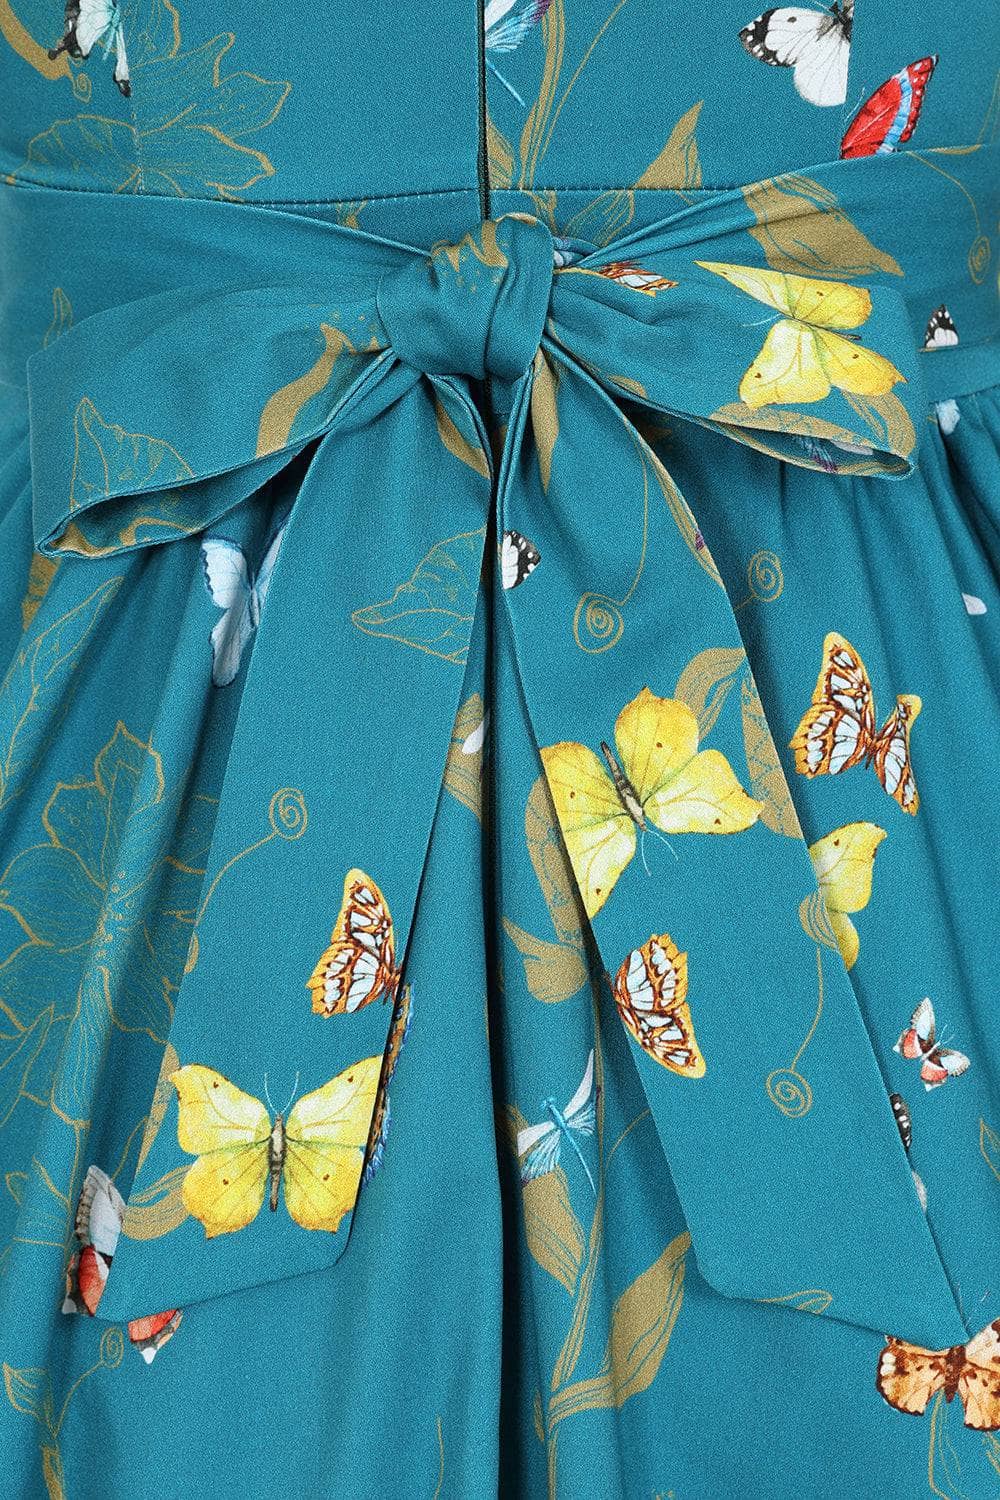 Swing Dress - Teal Butterfly Lady Vintage Swing Dresses